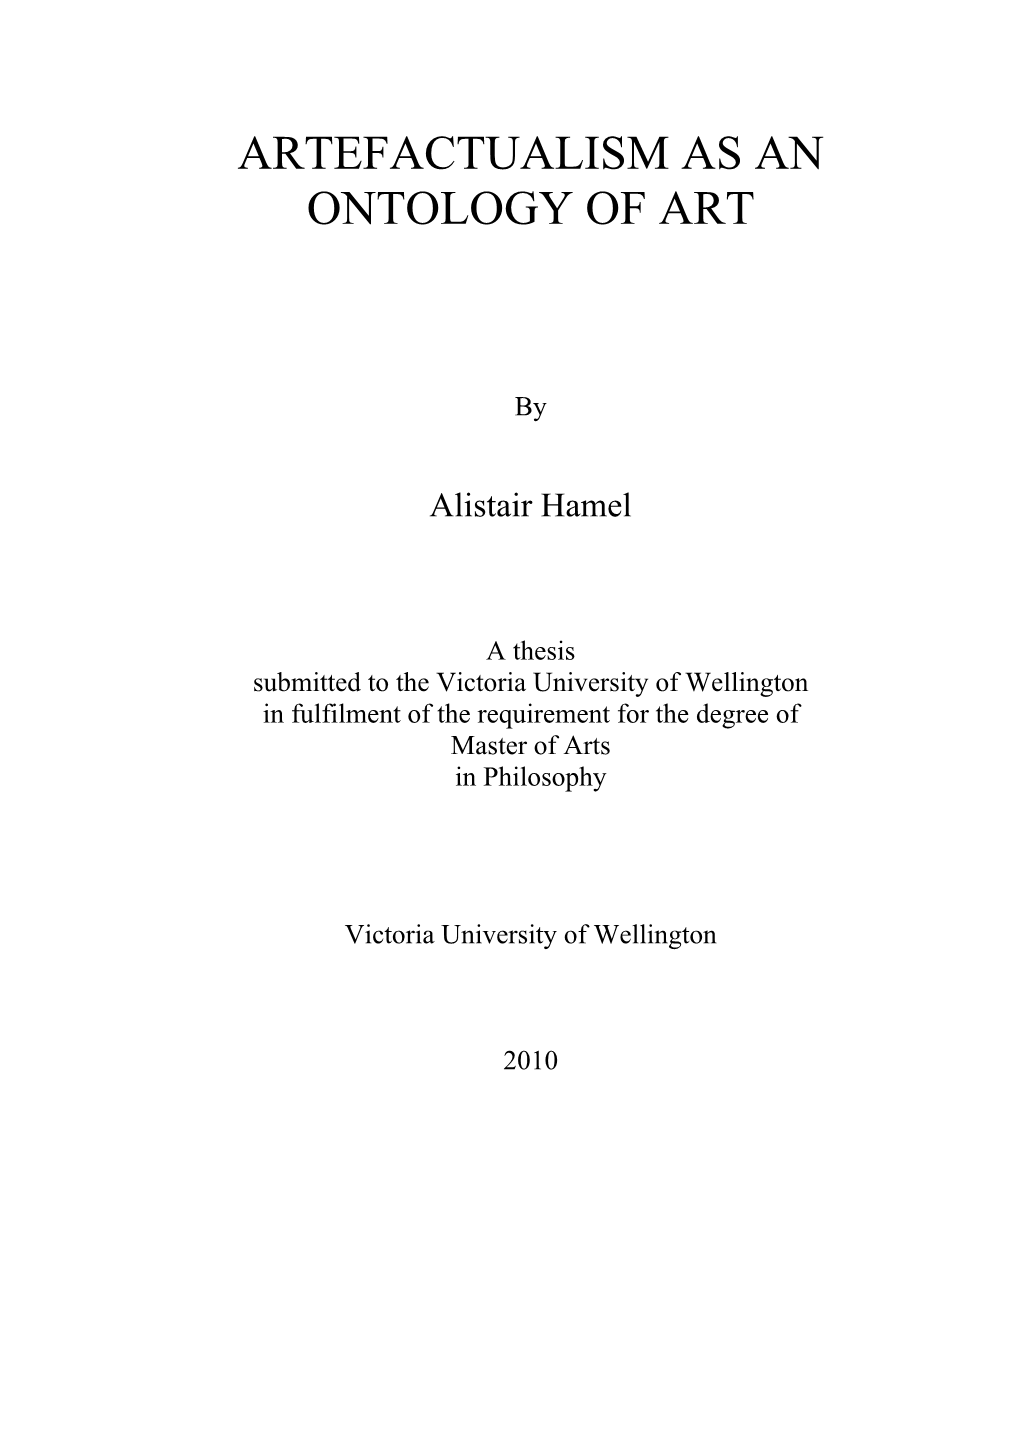 Artefactualism As an Ontology of Art